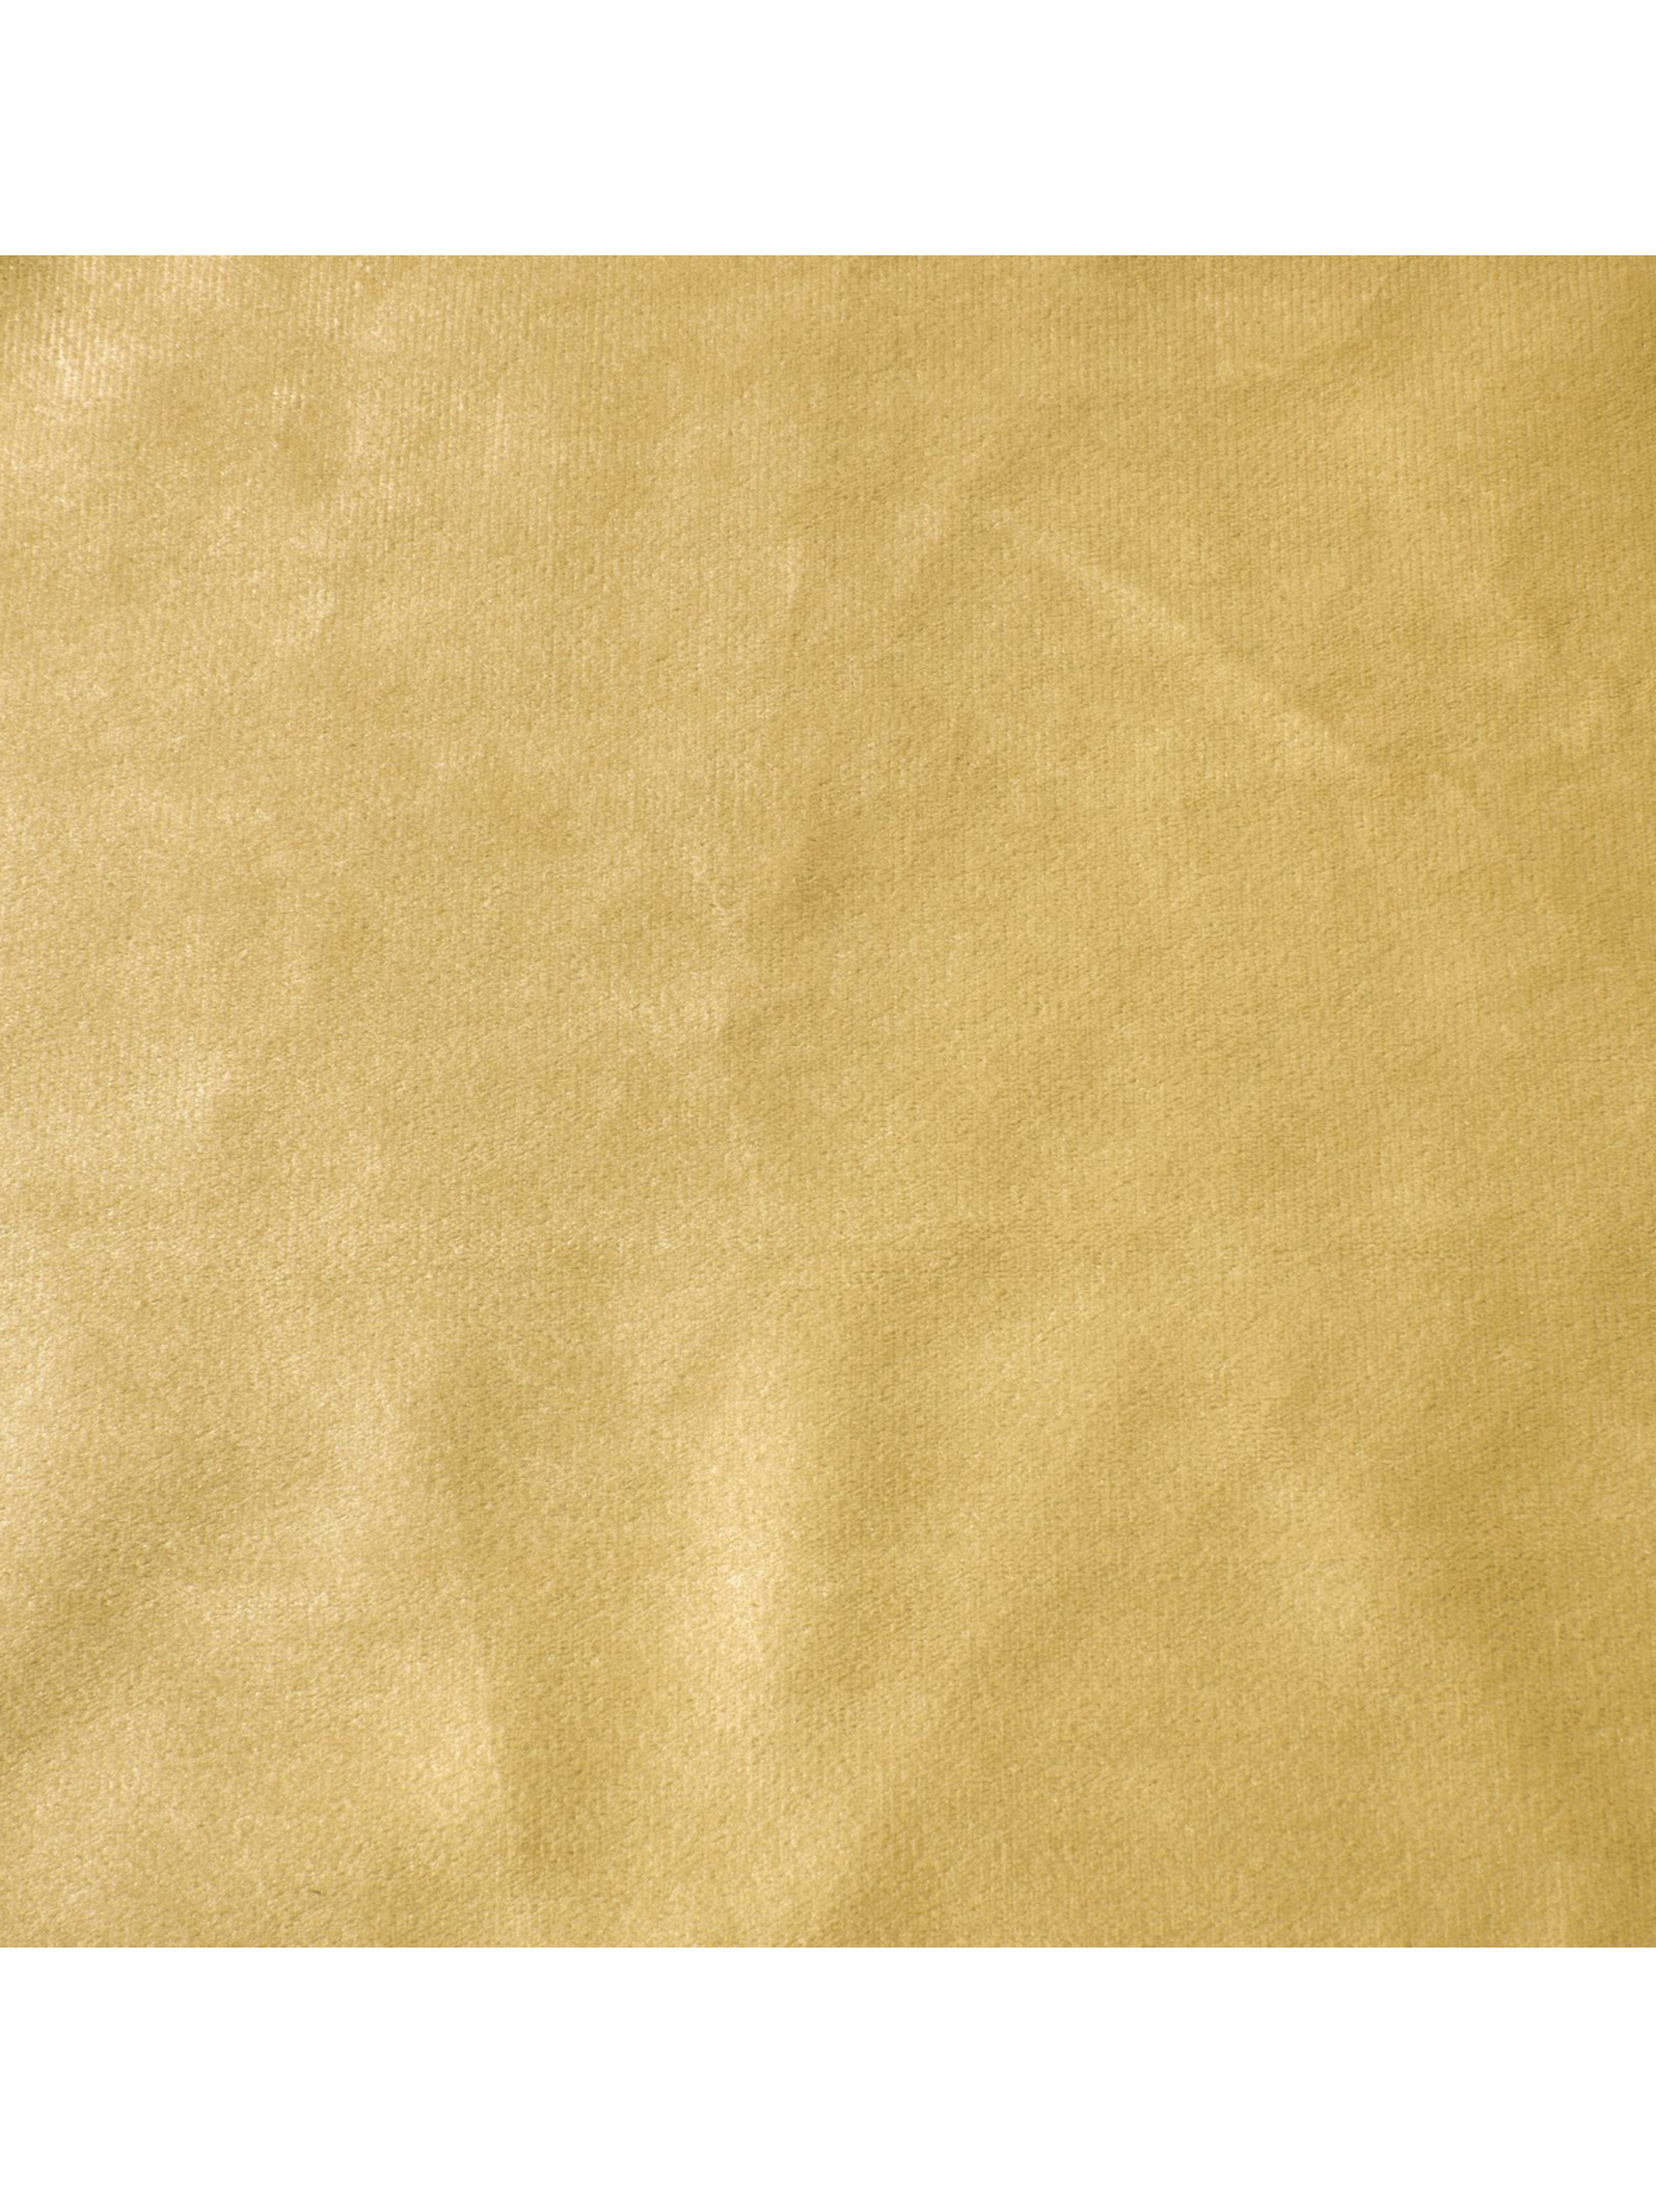 Musztardowa zasłona na taśmie 140x300 cm